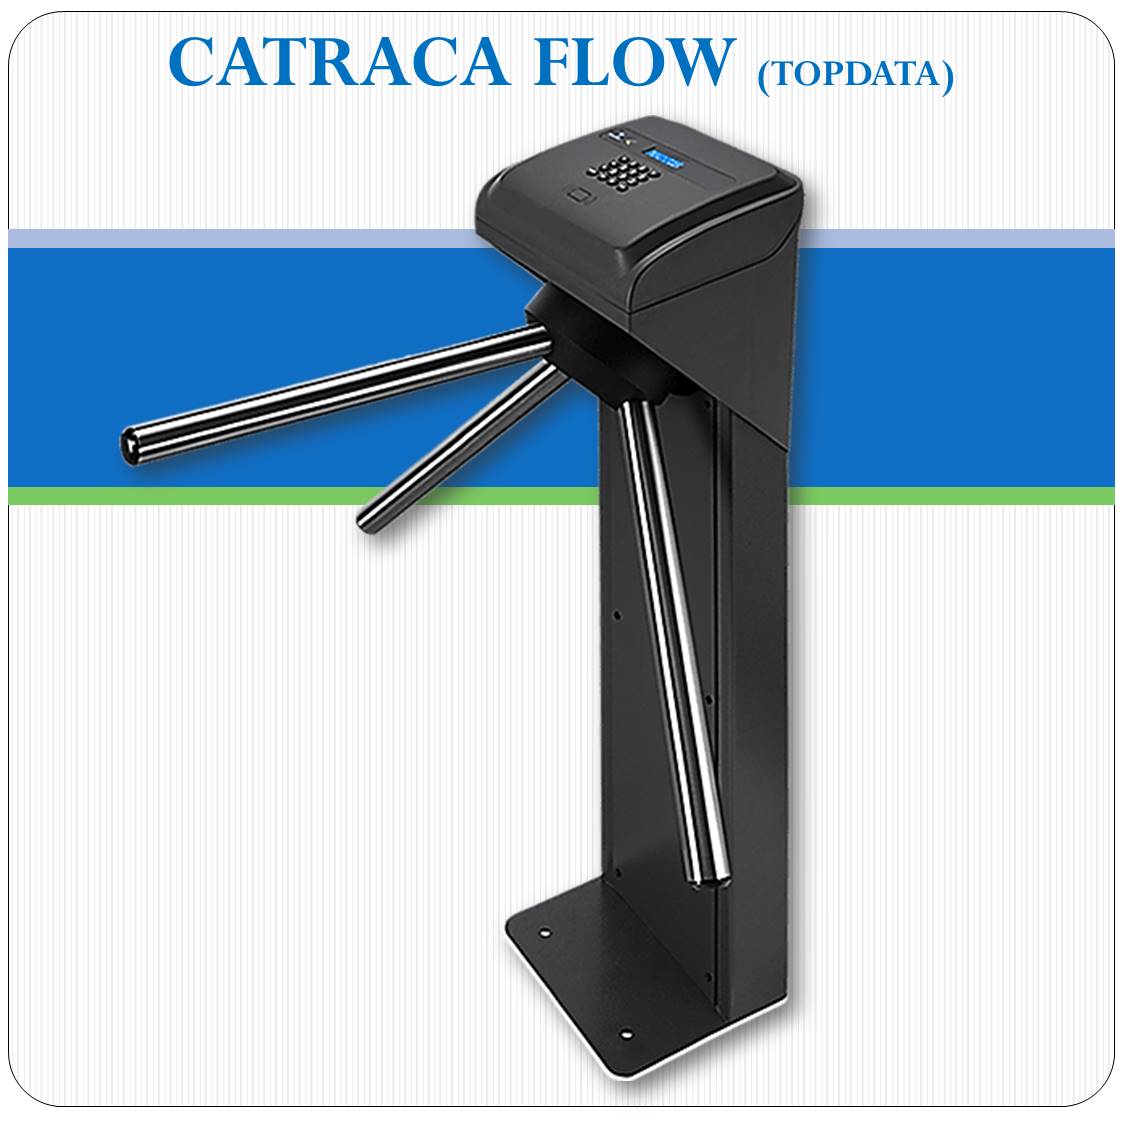 Catraca Flow - Controle de Lotação e Fluxo de Pessoas